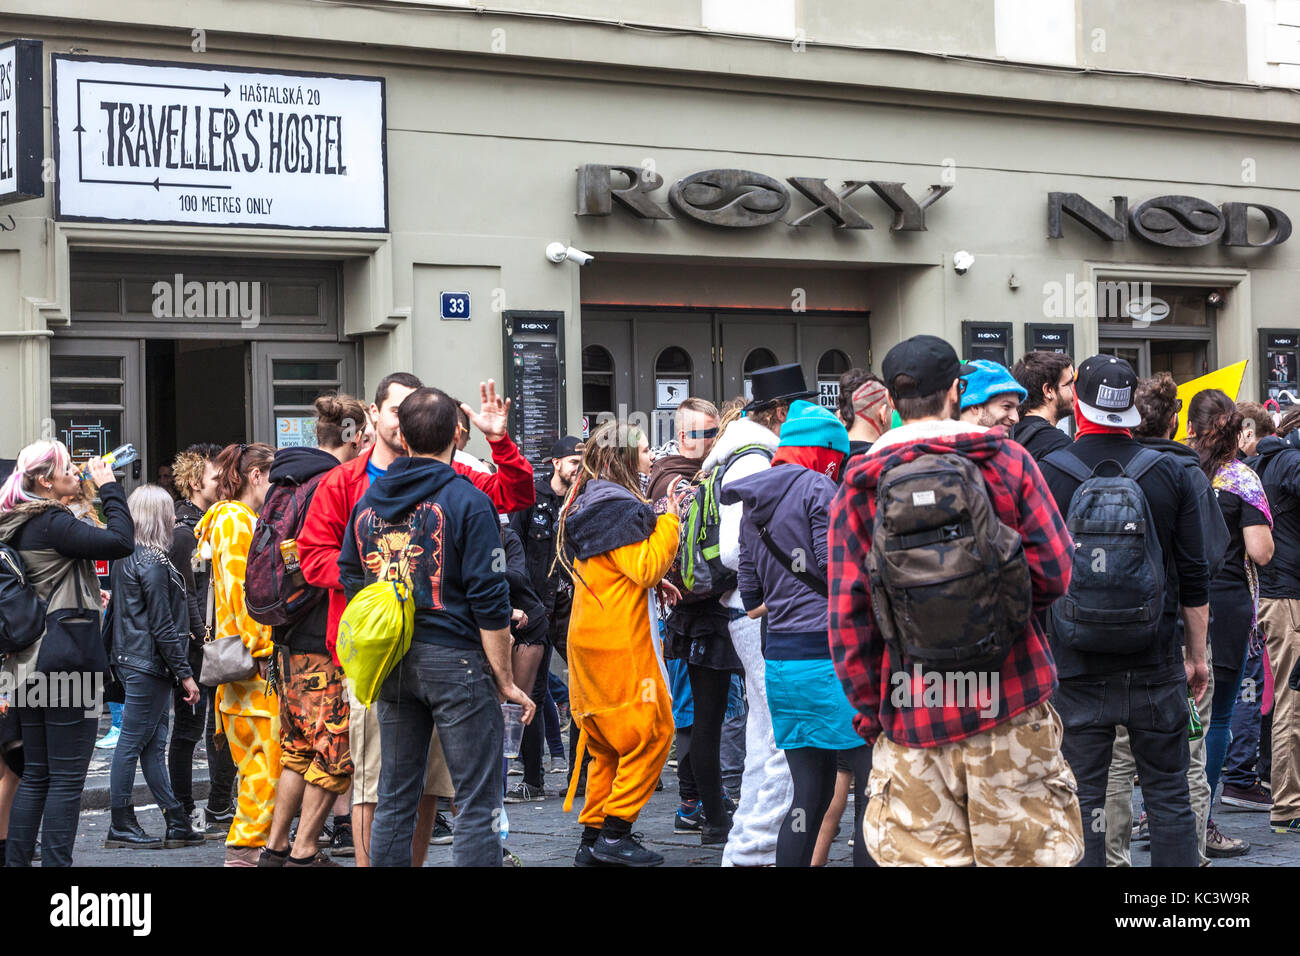 Junge Leute vor dem Roxy Music Club in der Dlouha Street, Prag, Tschechische Republik Stockfoto